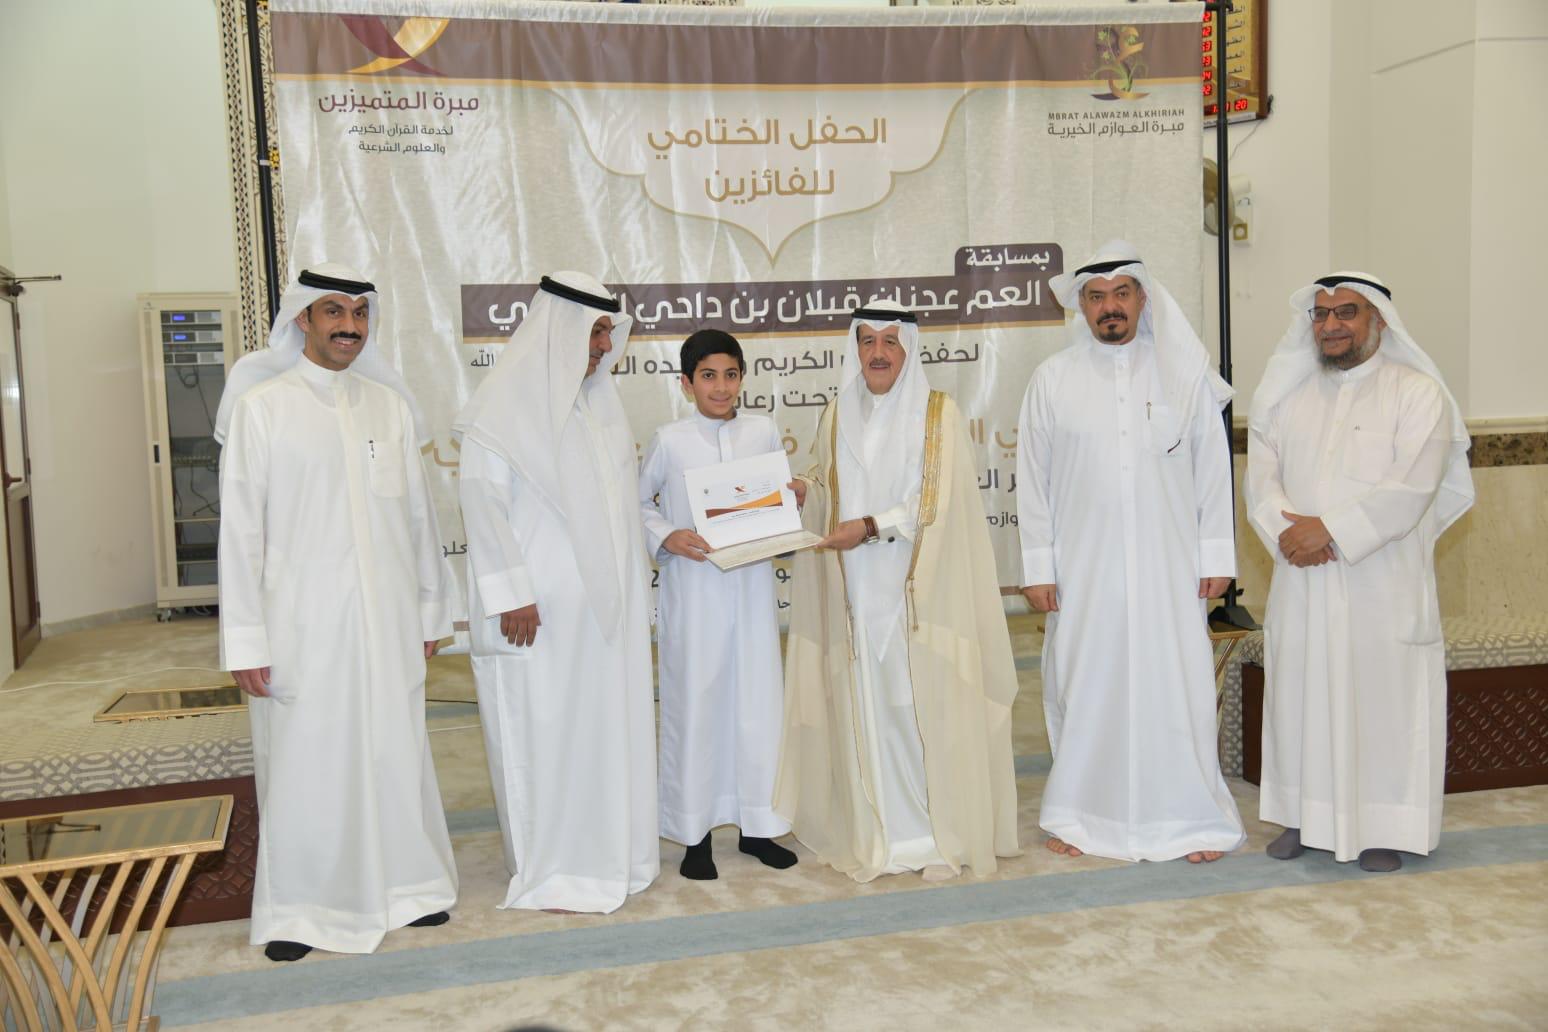 "مبرة العوازم الخيرية" تكرم الفائزين بمسابقة المرحوم عجنان قبلان العازمي الثالثة لحفظ القرآن